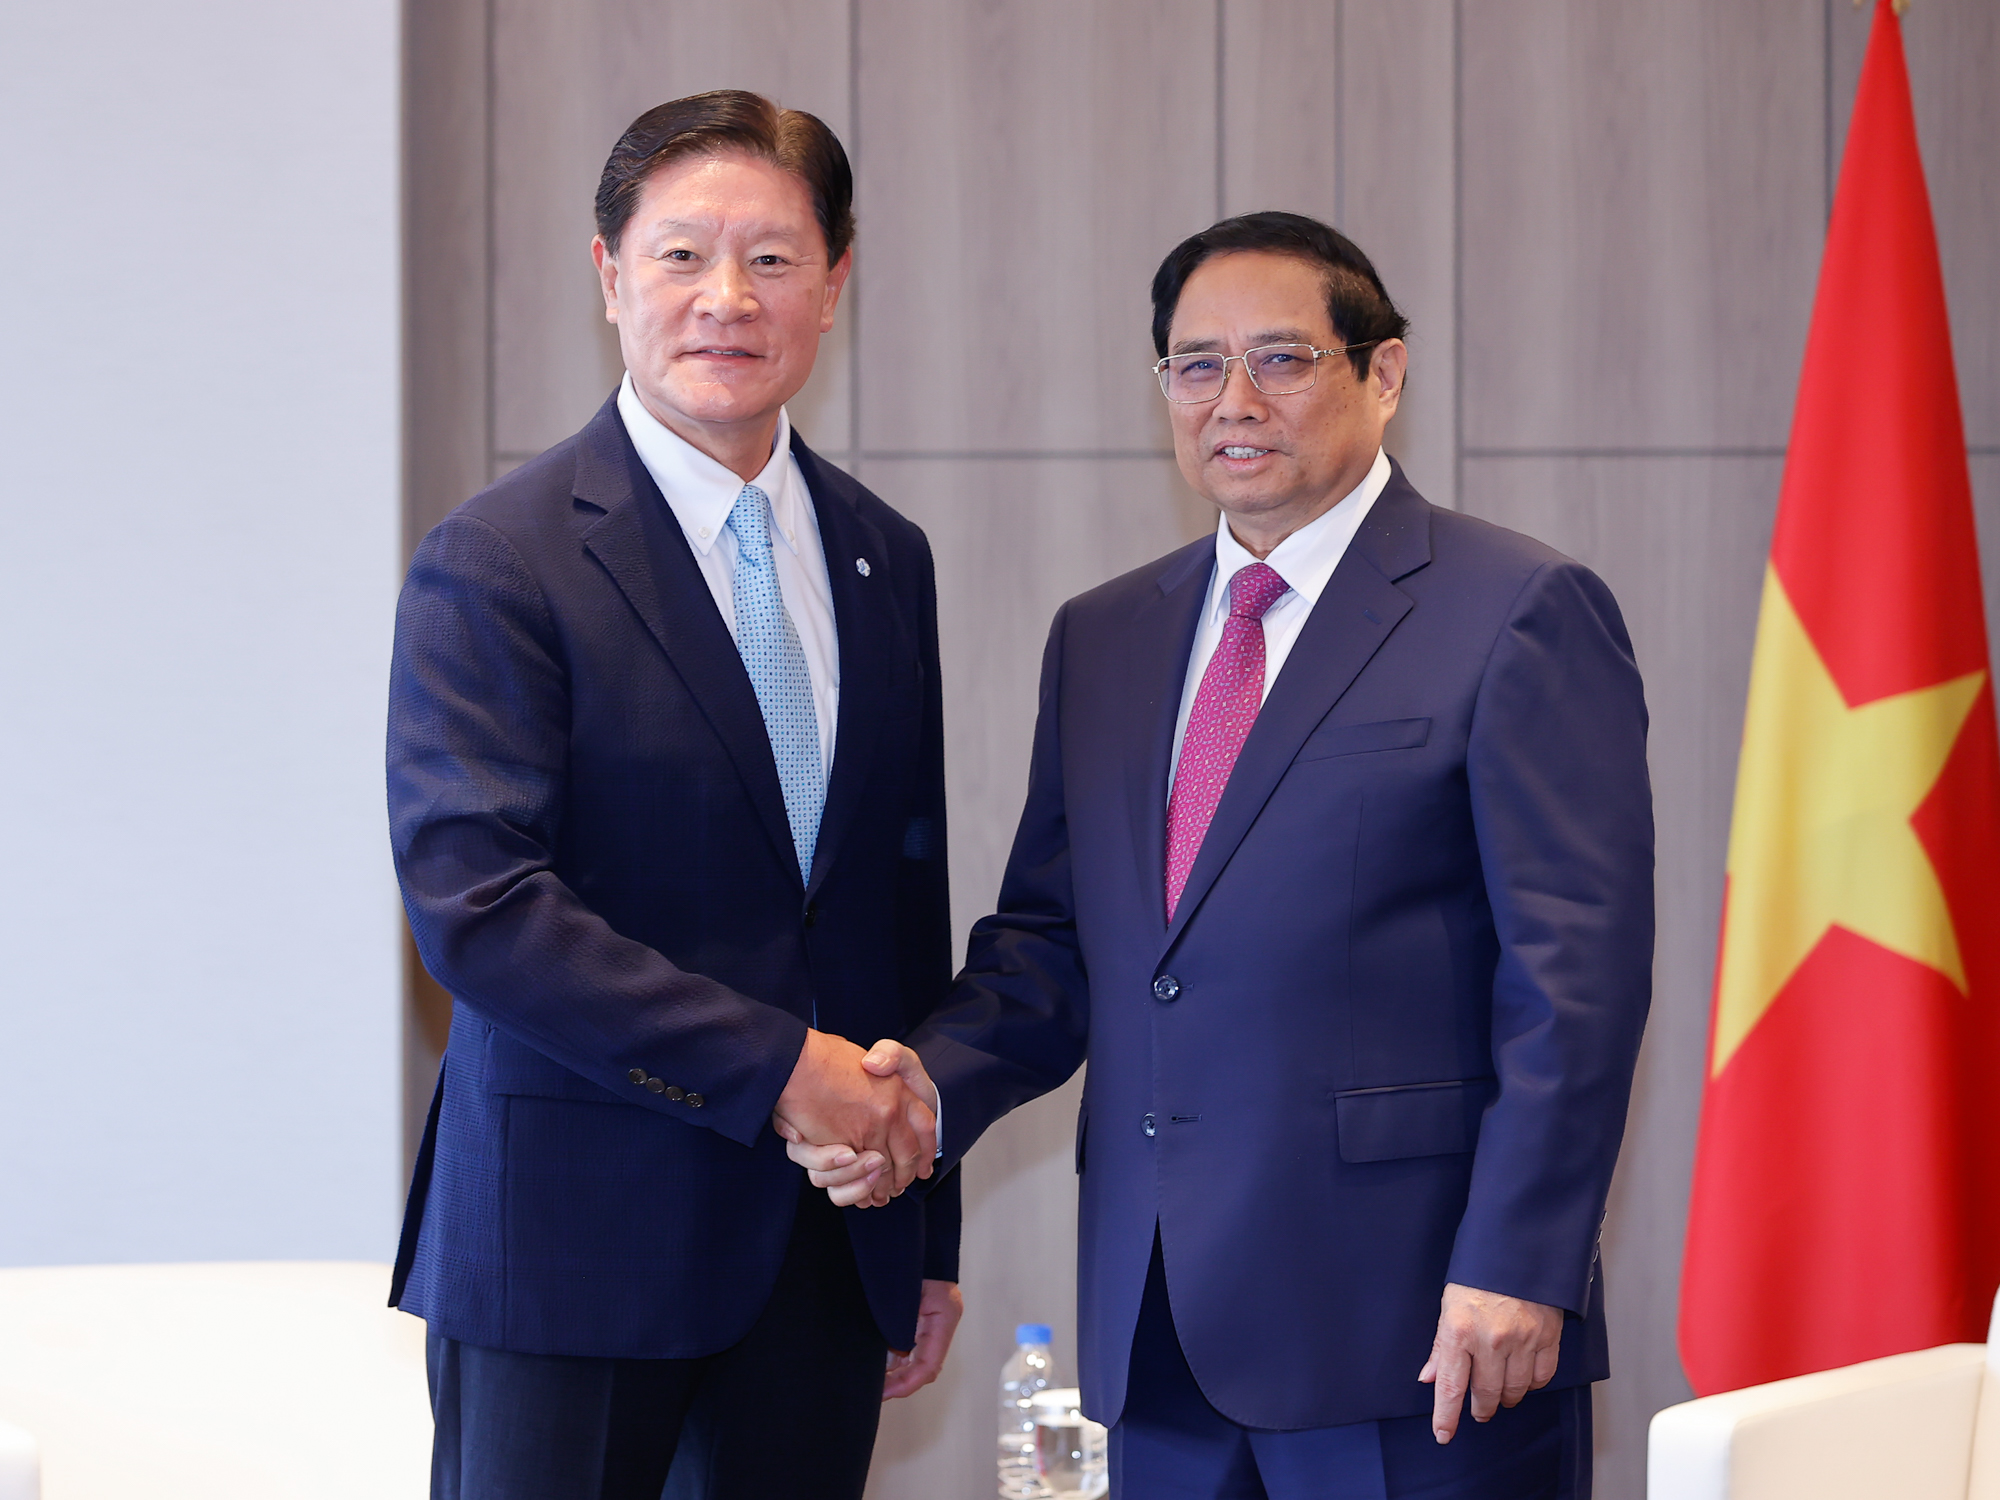 Thủ tướng tiếp ông Huh Yoon Hong, Chủ tịch và ông Huh Myung-soo, Cố vấn cấp cao tập đoàn GS Engineering & Construction Corp - Ảnh: VGP/Nhật Bắc